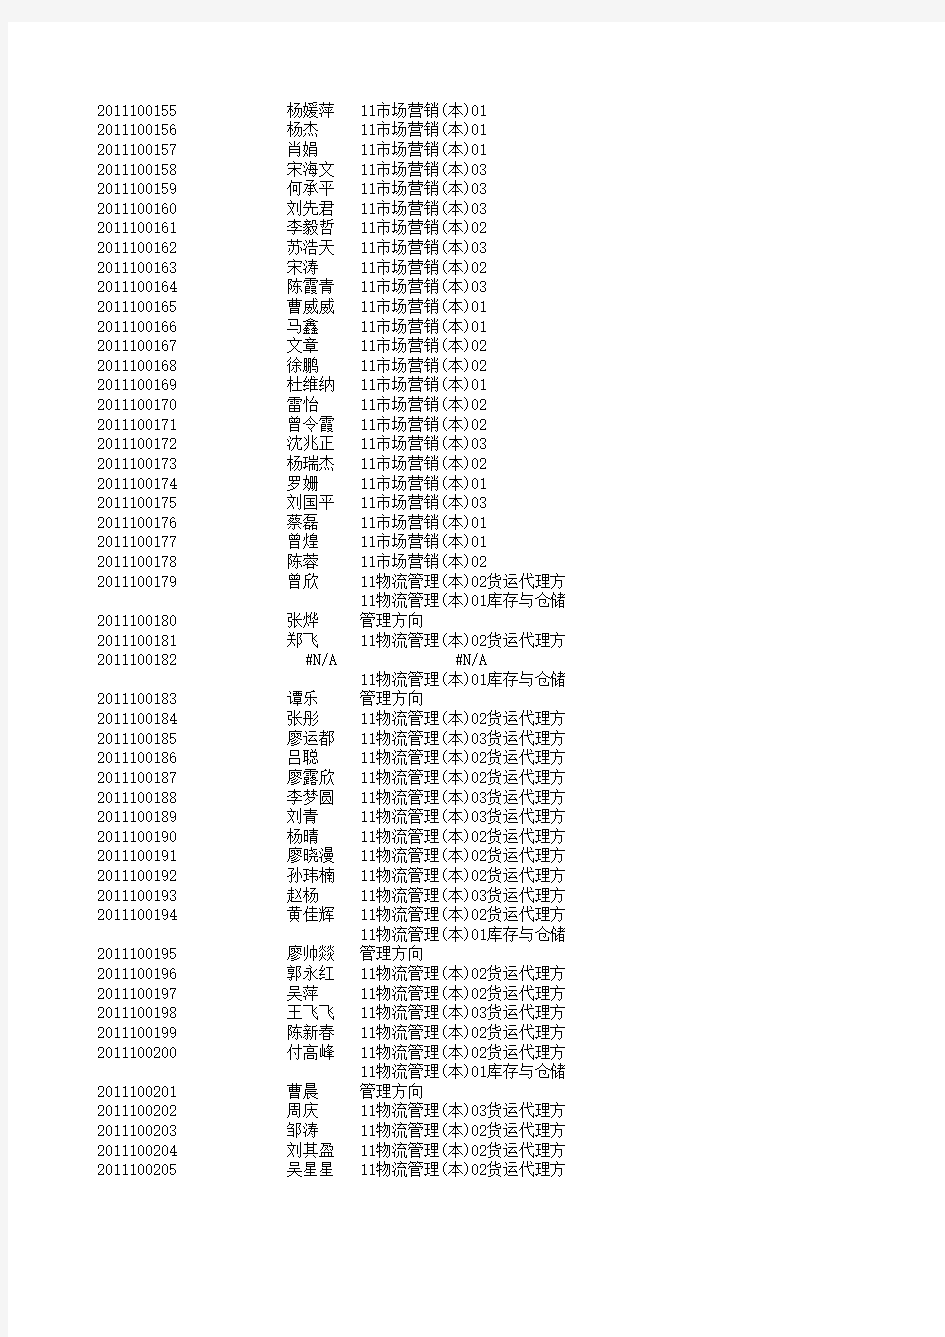 南昌工程学院学生 学号、姓名、专业班级信息表2011-2014